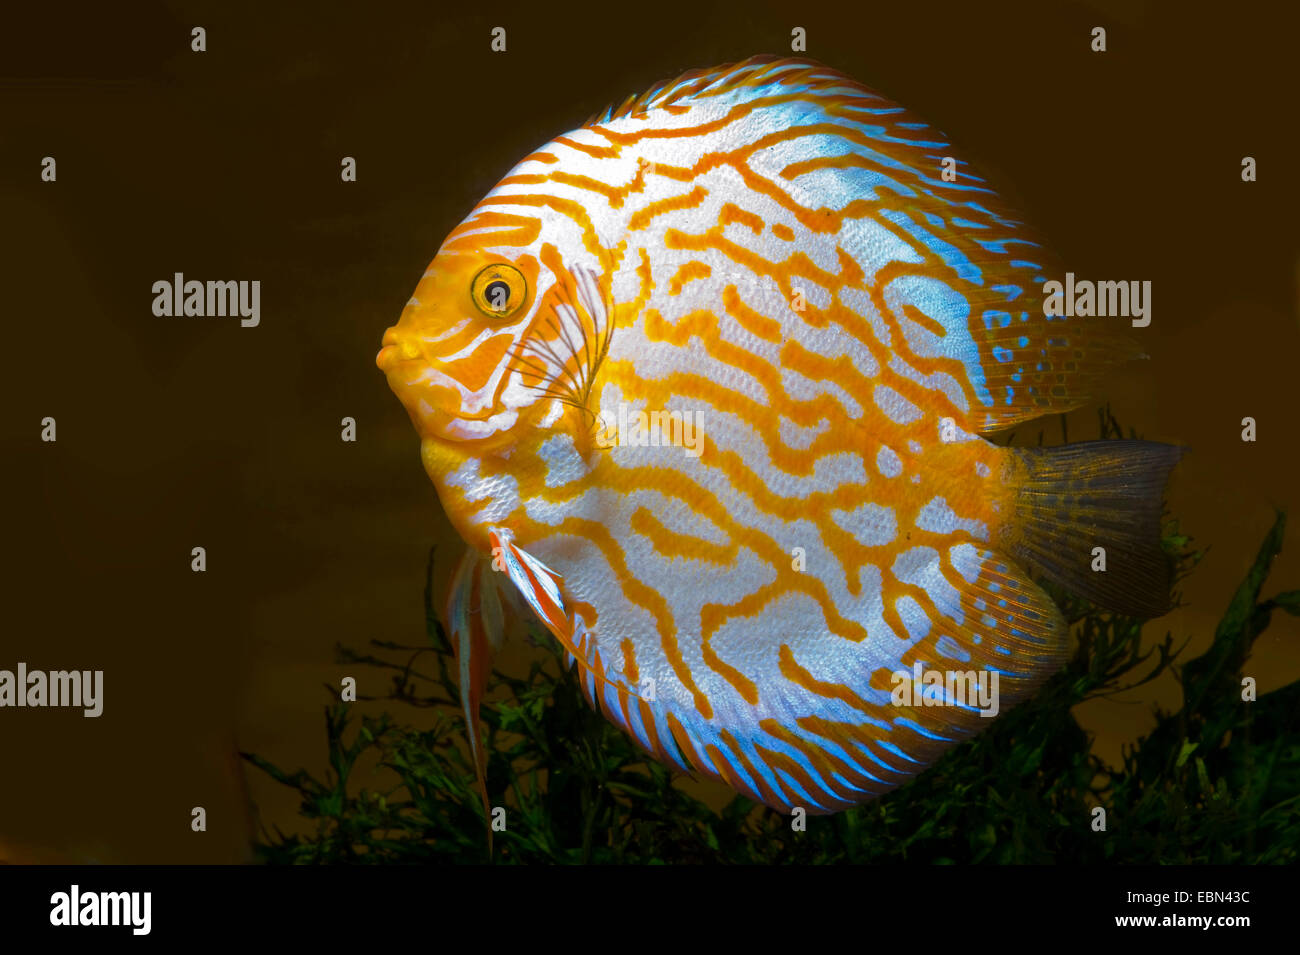 golden leopard discus fish